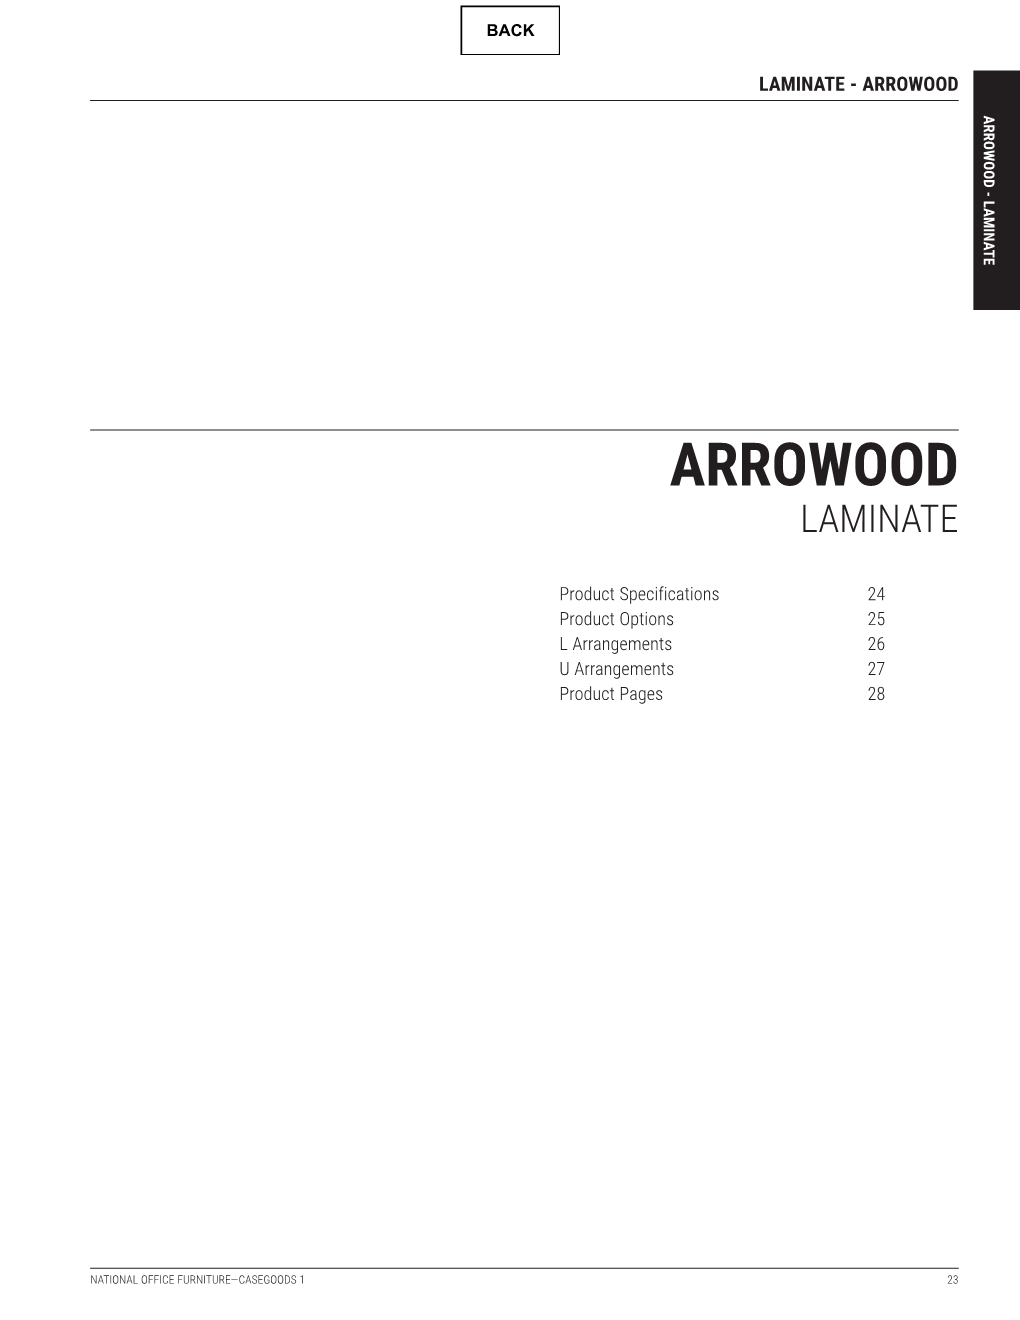 Arrowood Laminate Price List